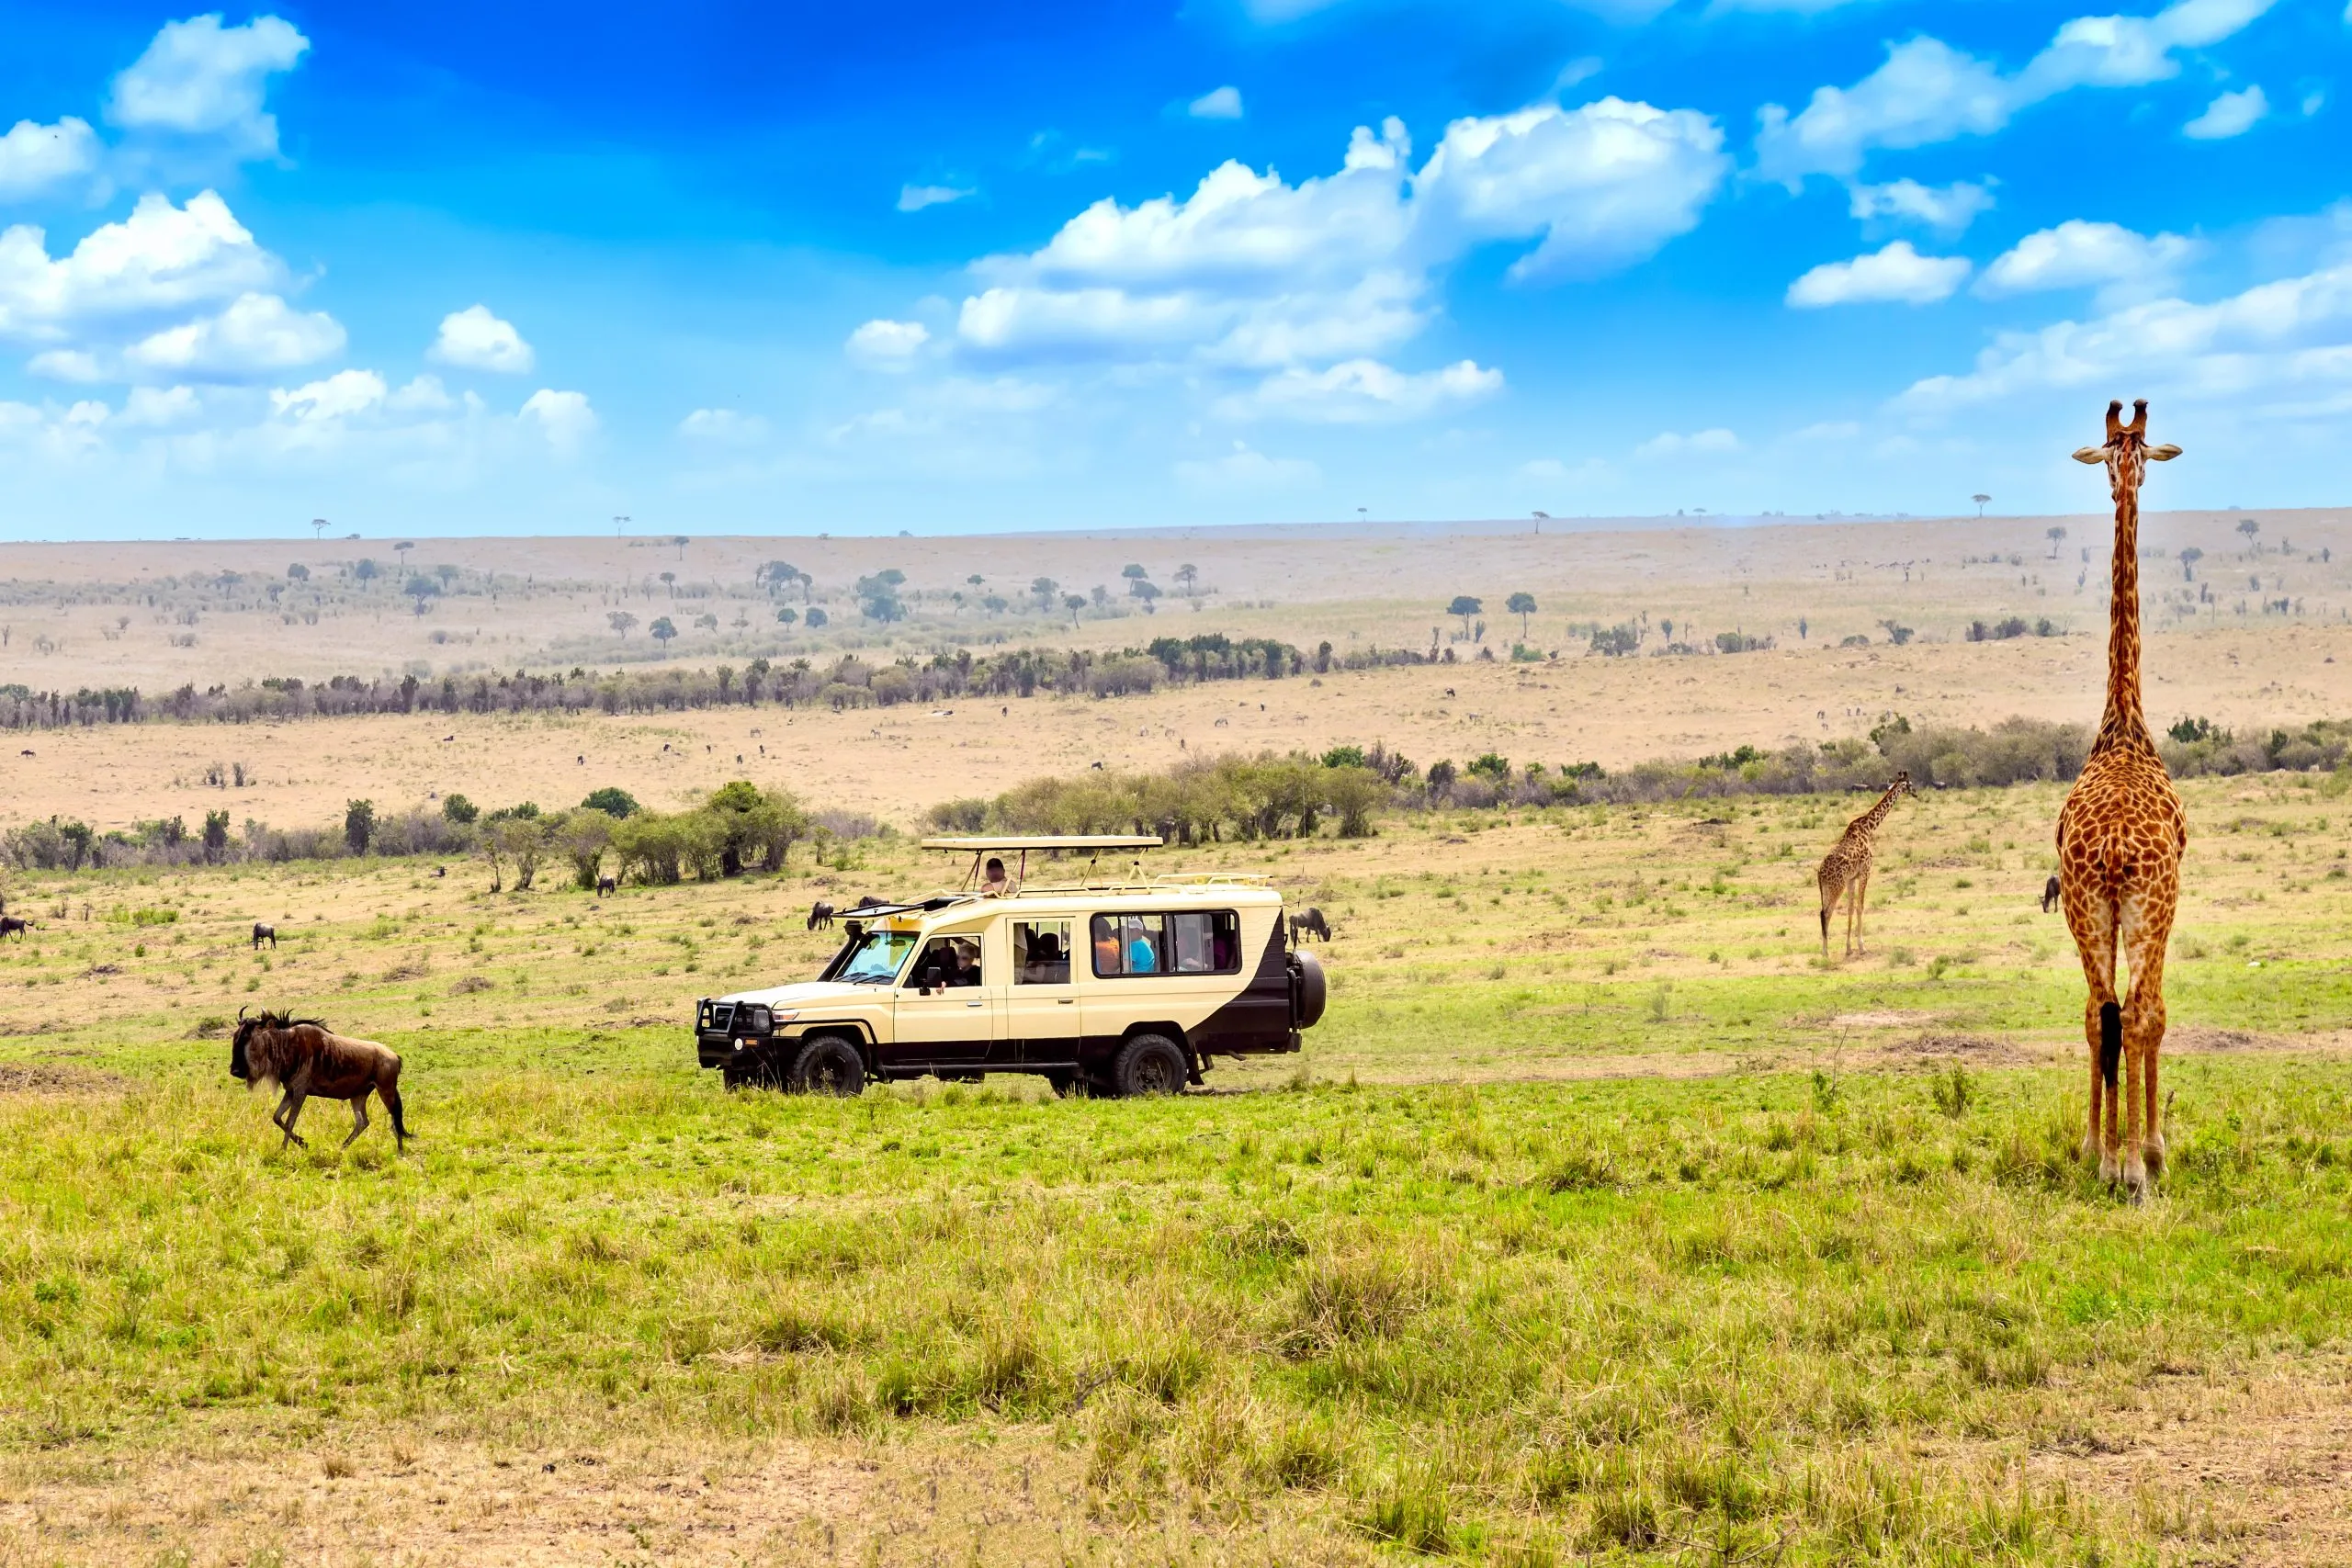 Wild giraffe and wildebeest near safari car in Masai Mara National Park, Kenya. Safari concept. African travel landscape